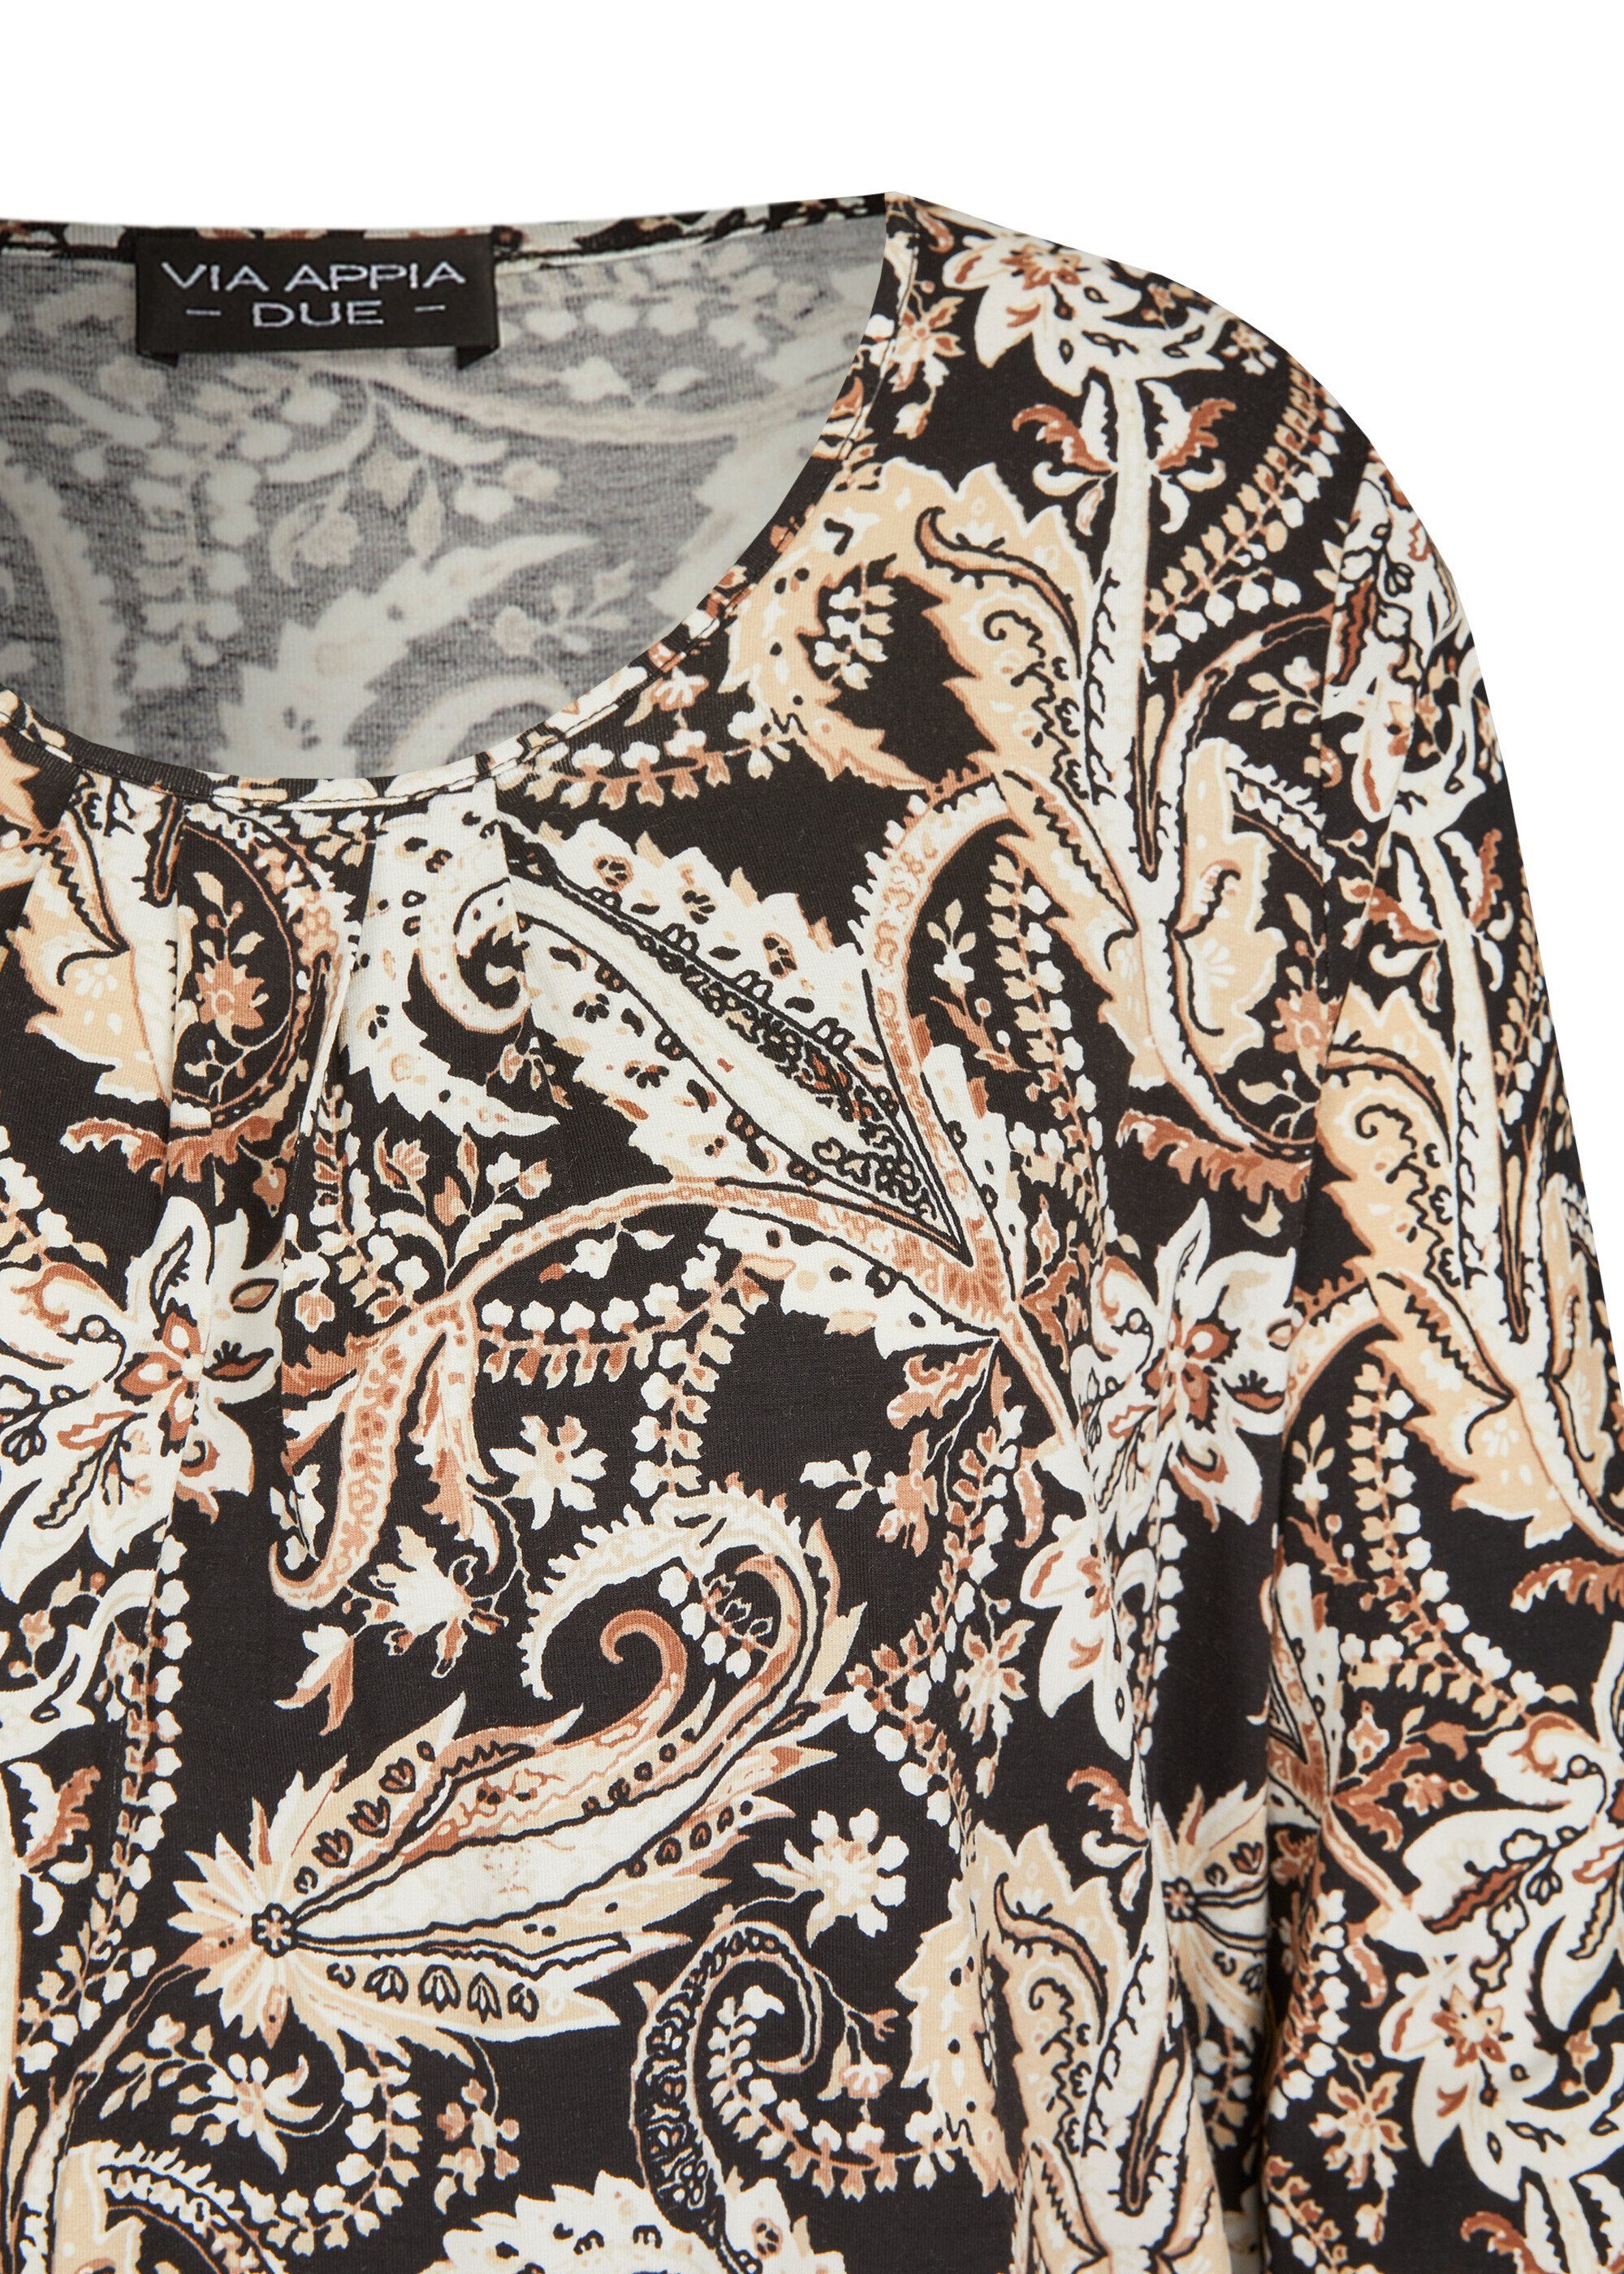 Print-Shirt schwarz APPIA Verspieltes multicolor Muster VIA mit floralem DUE 3/4-Arm-Shirt